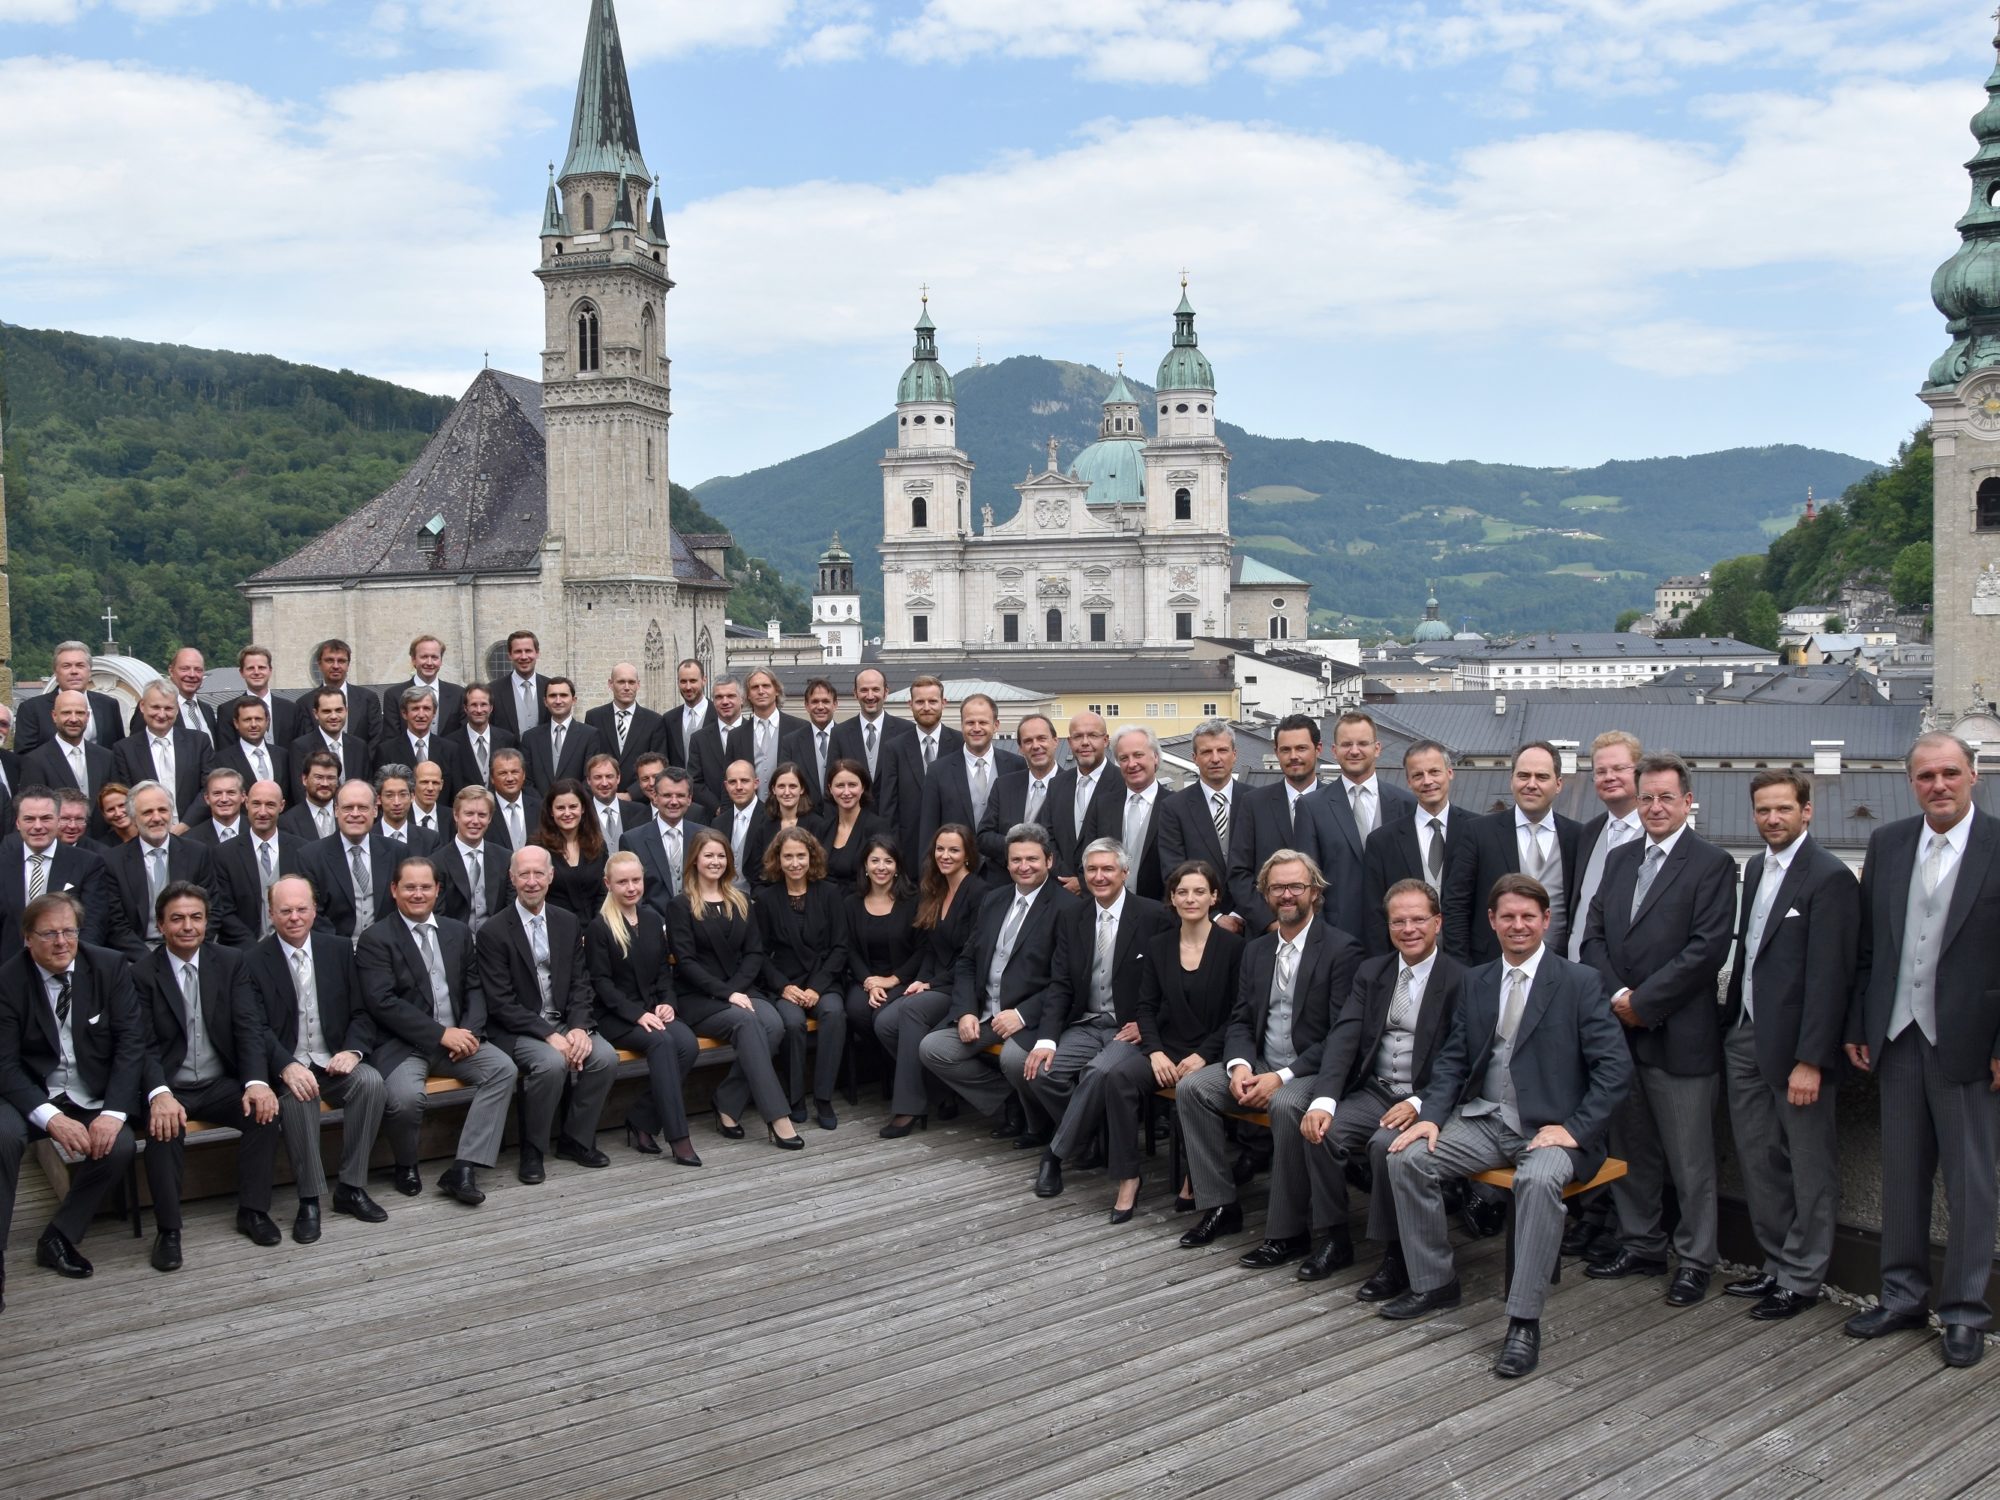 Wiener Philharmoniker über den Dächern von Salzburg / Foto @ Anne Zeuner